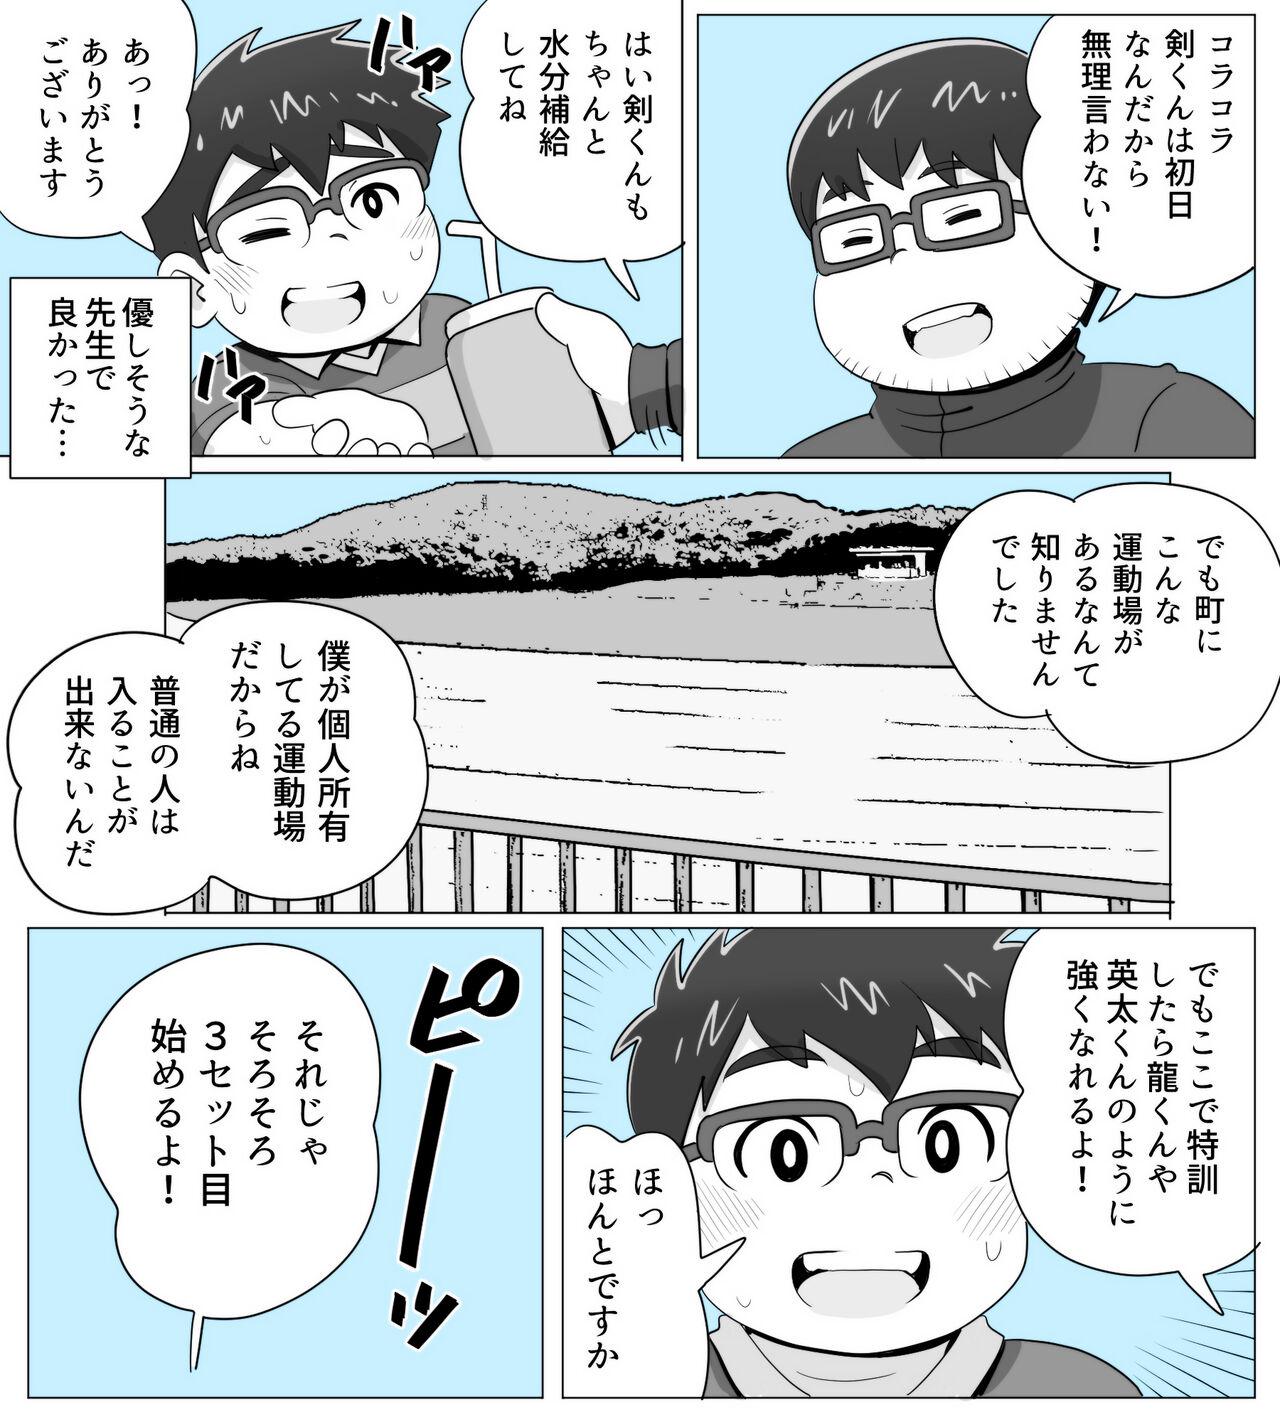 obeccho - 短編漫画「施術にようこそ！剣くん編」 7